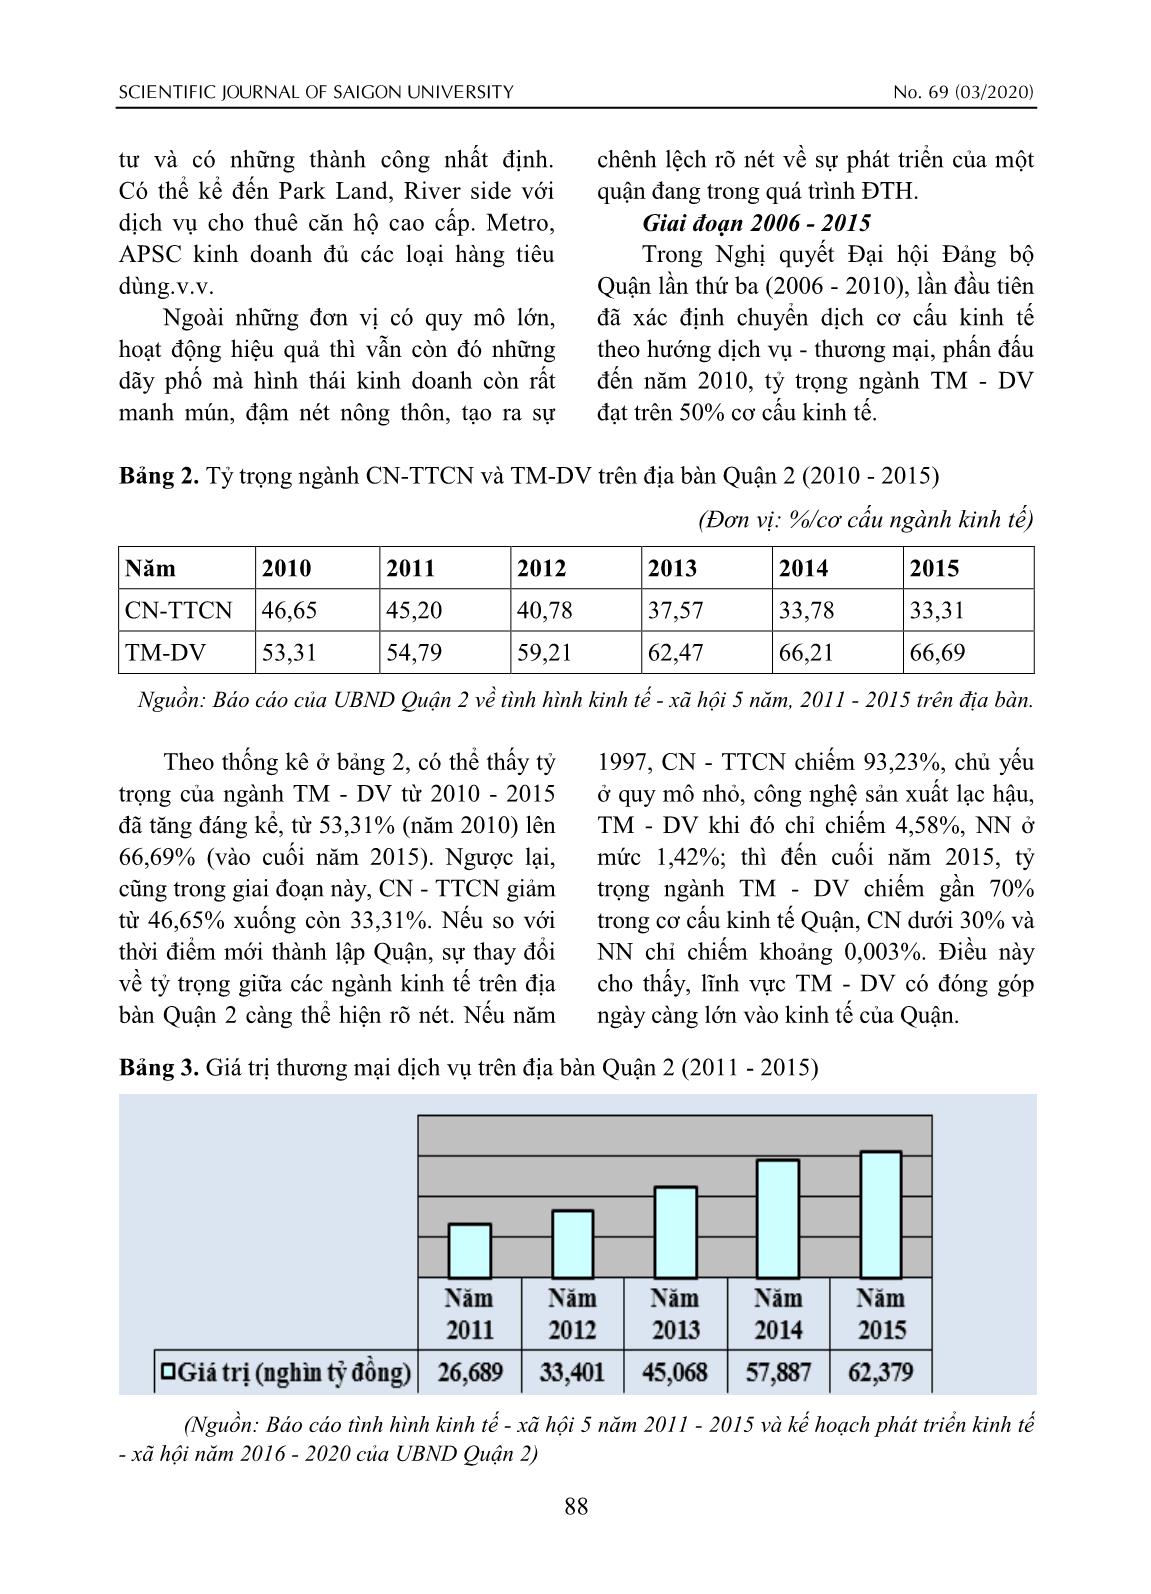 Chuyển biến về thương mại - dịch vụ trong quá trình đô thị hóa quận 2 (thành phố Hồ Chí Minh) từ 1997-2015 trang 6